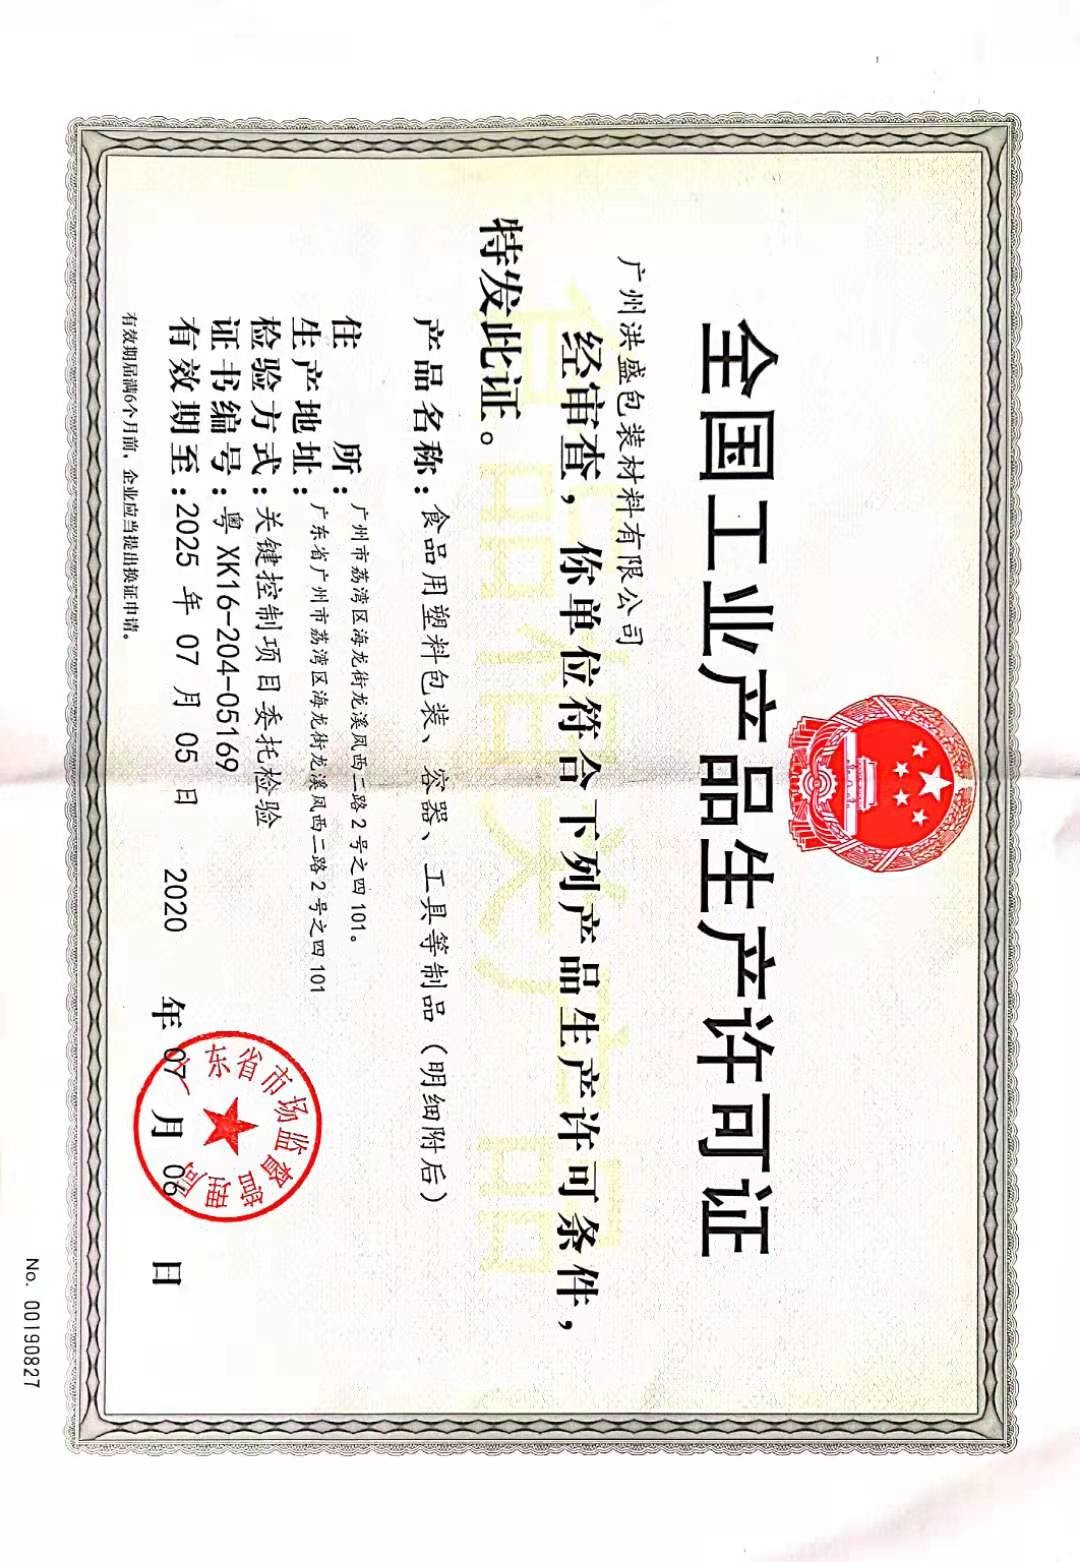 guangzhou hong sheng packaing matereials co.,Ltd. Certifications